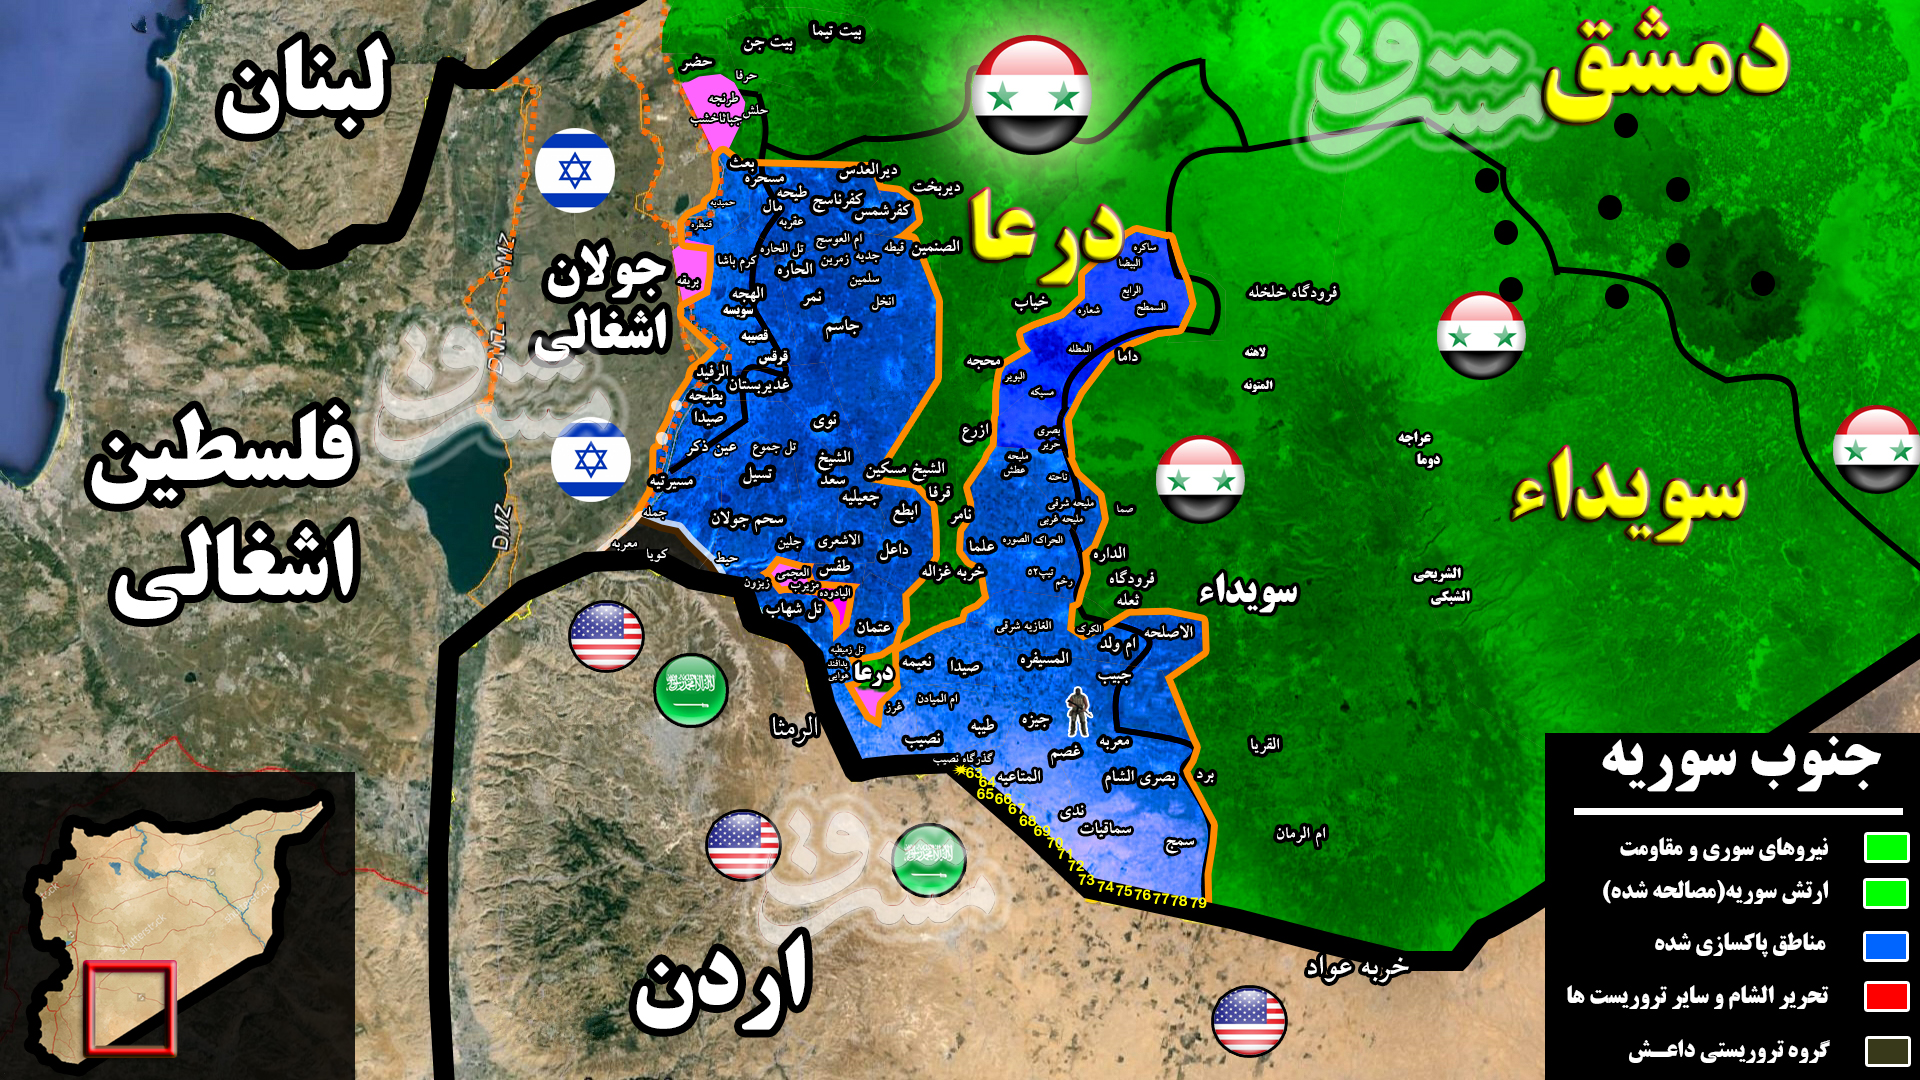 آخرین تحولات میدانی جنوب سوریه؛ ۹۸ درصد استان درعا به کنترل نیروهای سوری درآمد + نقشه میدانی